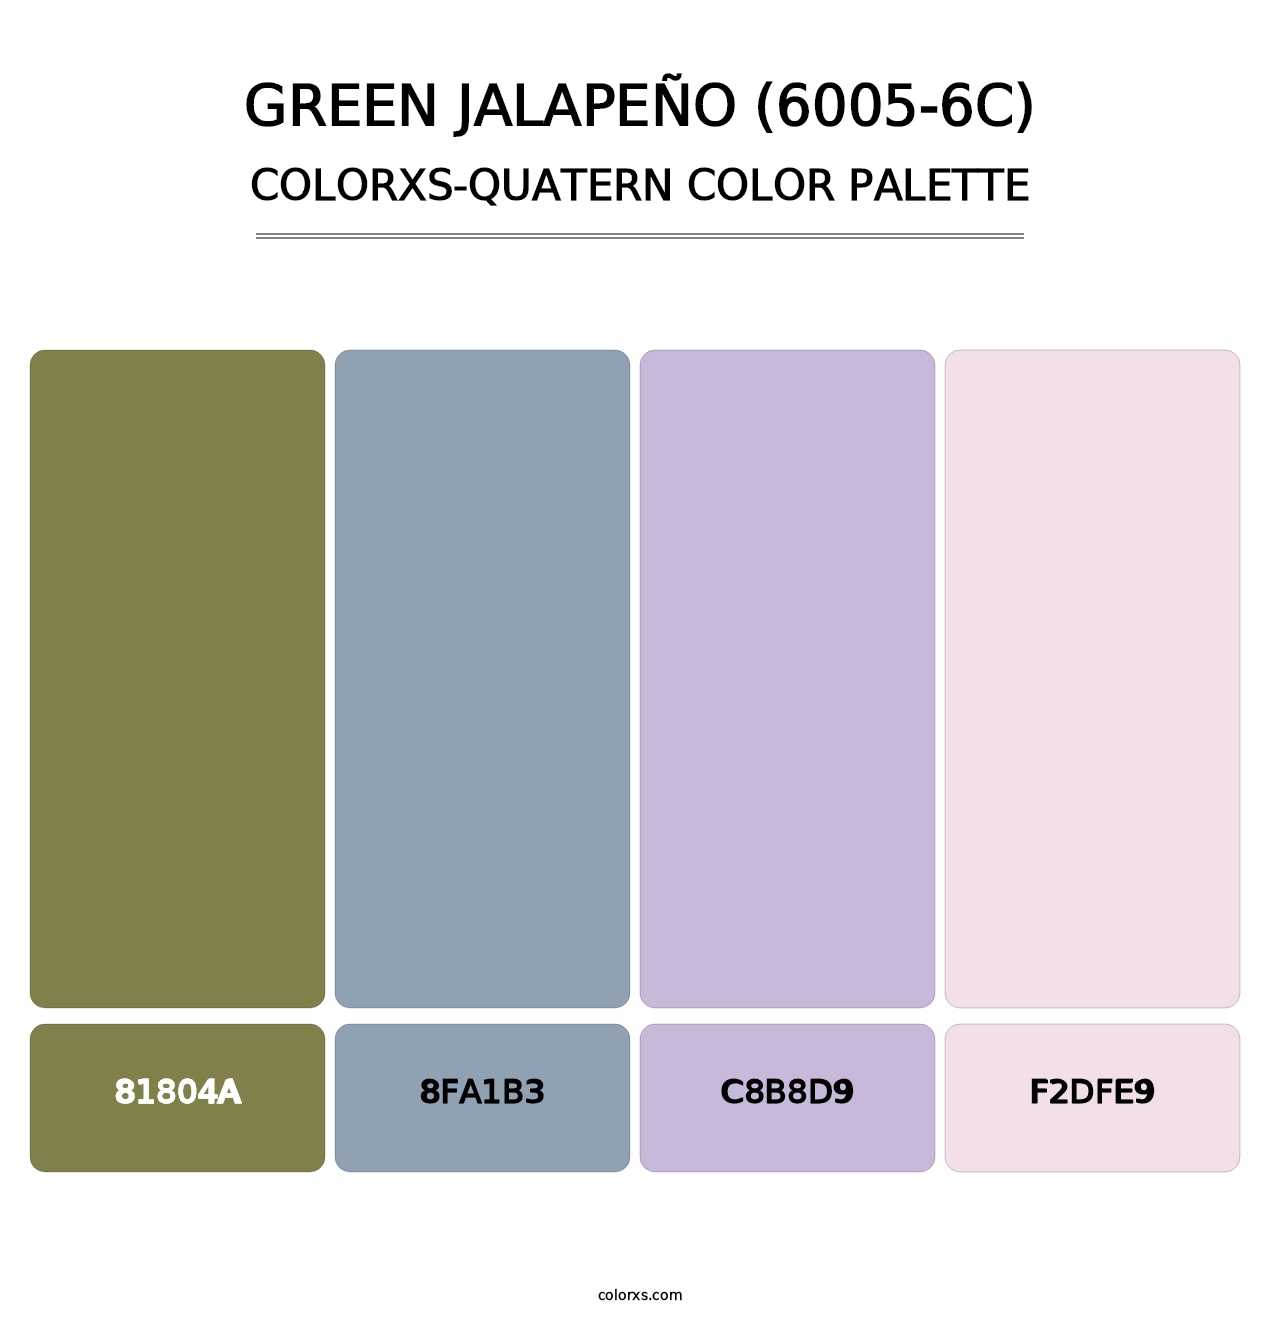 Green Jalapeño (6005-6C) - Colorxs Quatern Palette